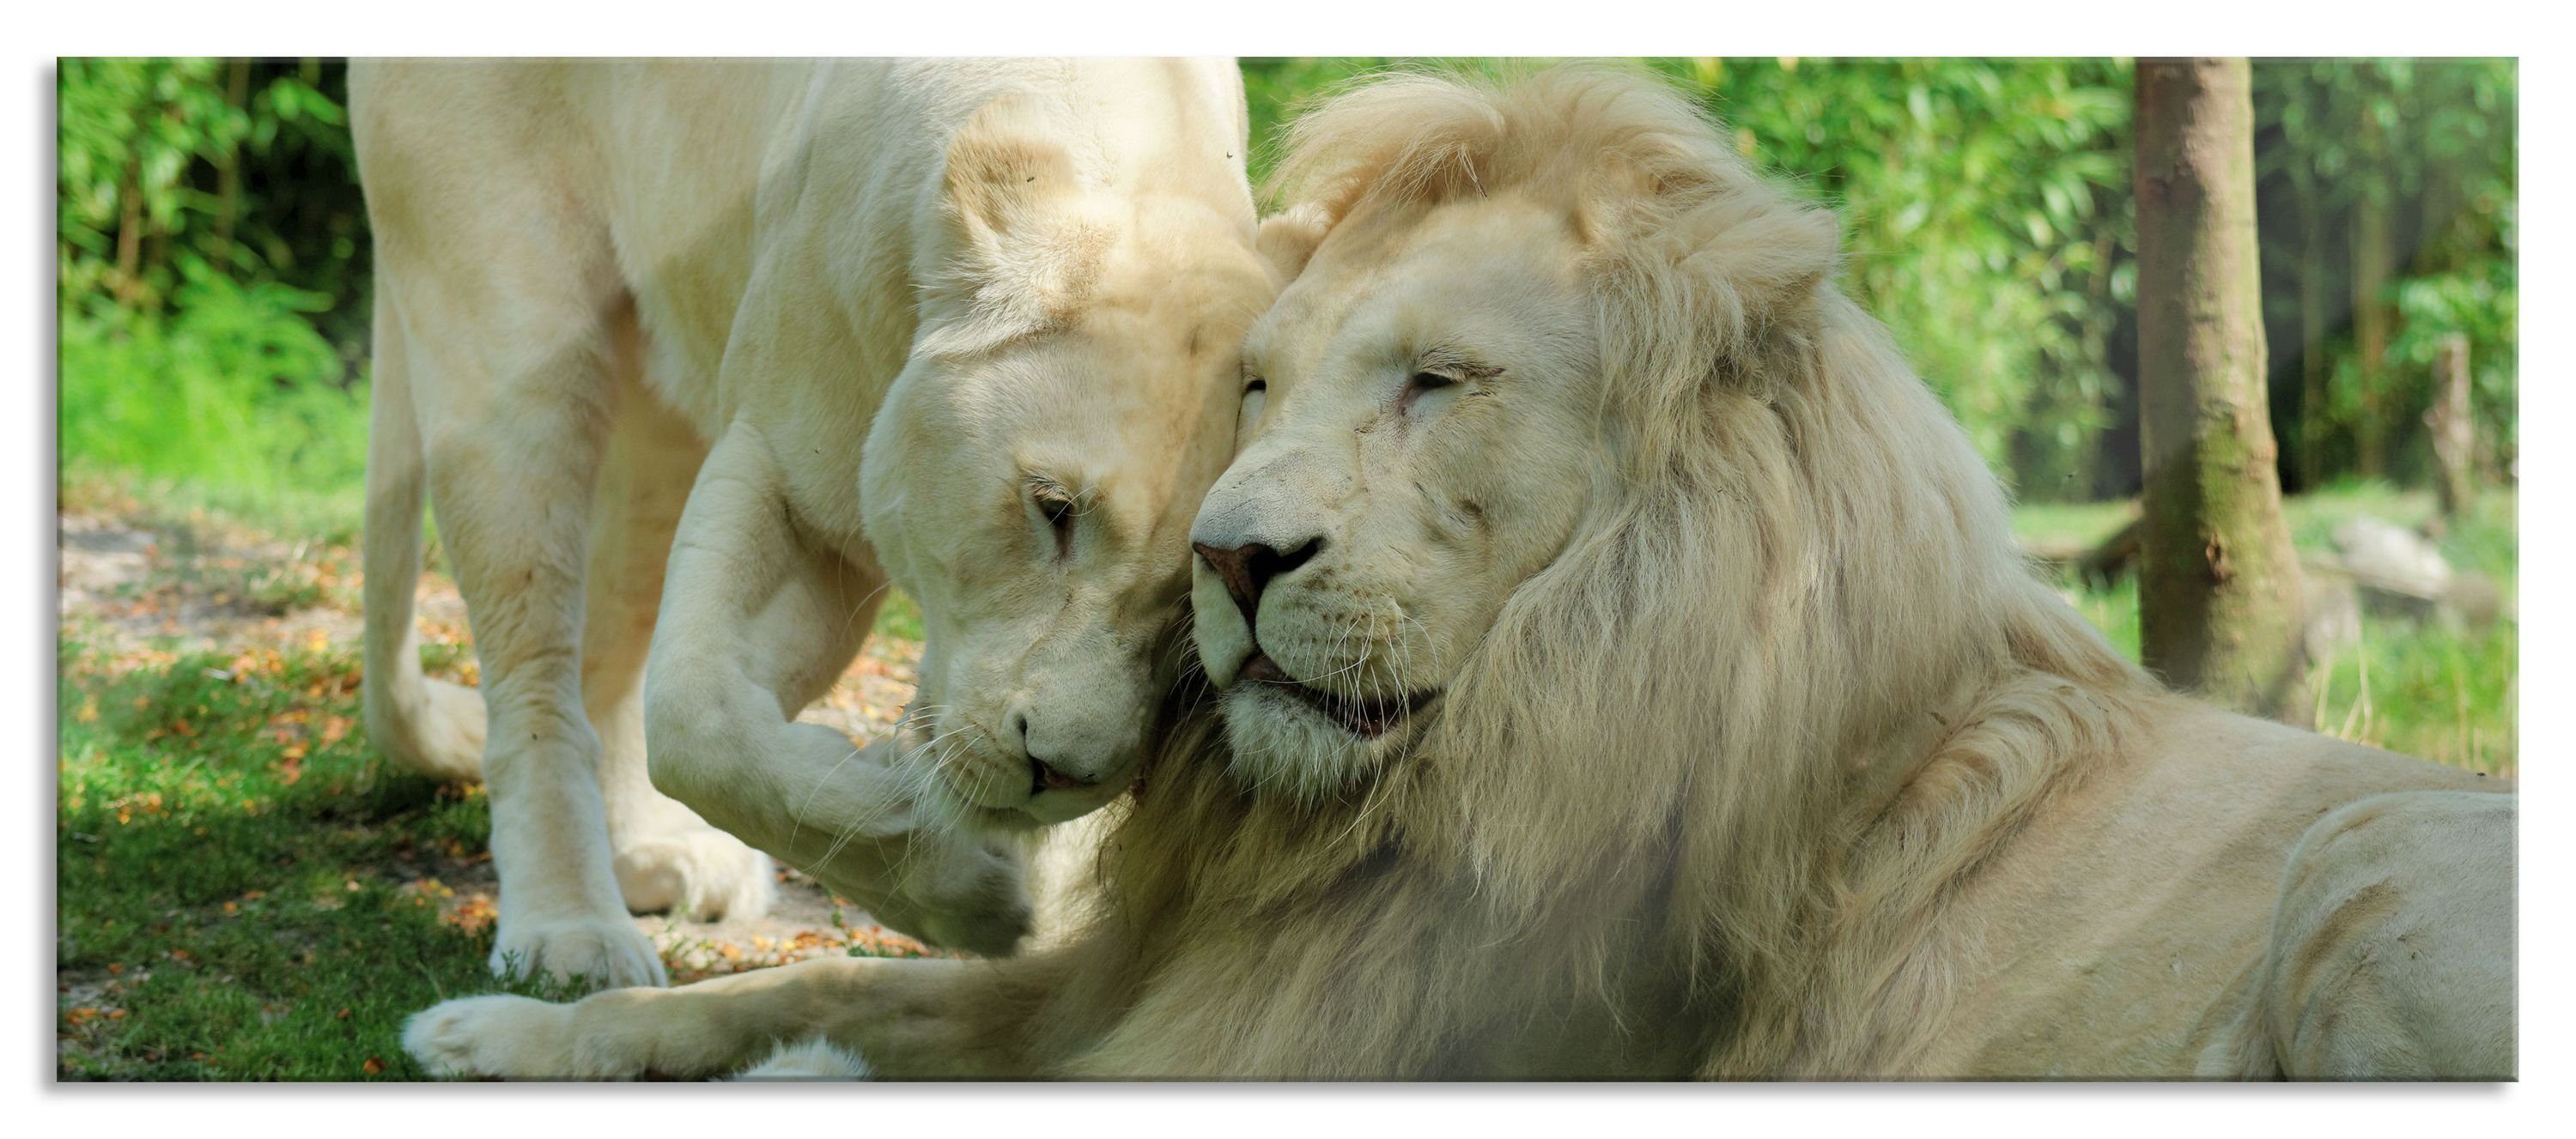 Pixxprint Glasbild verliebtes Löwenpaar, verliebtes Löwenpaar (1 St), Glasbild aus Echtglas, inkl. Aufhängungen und Abstandshalter